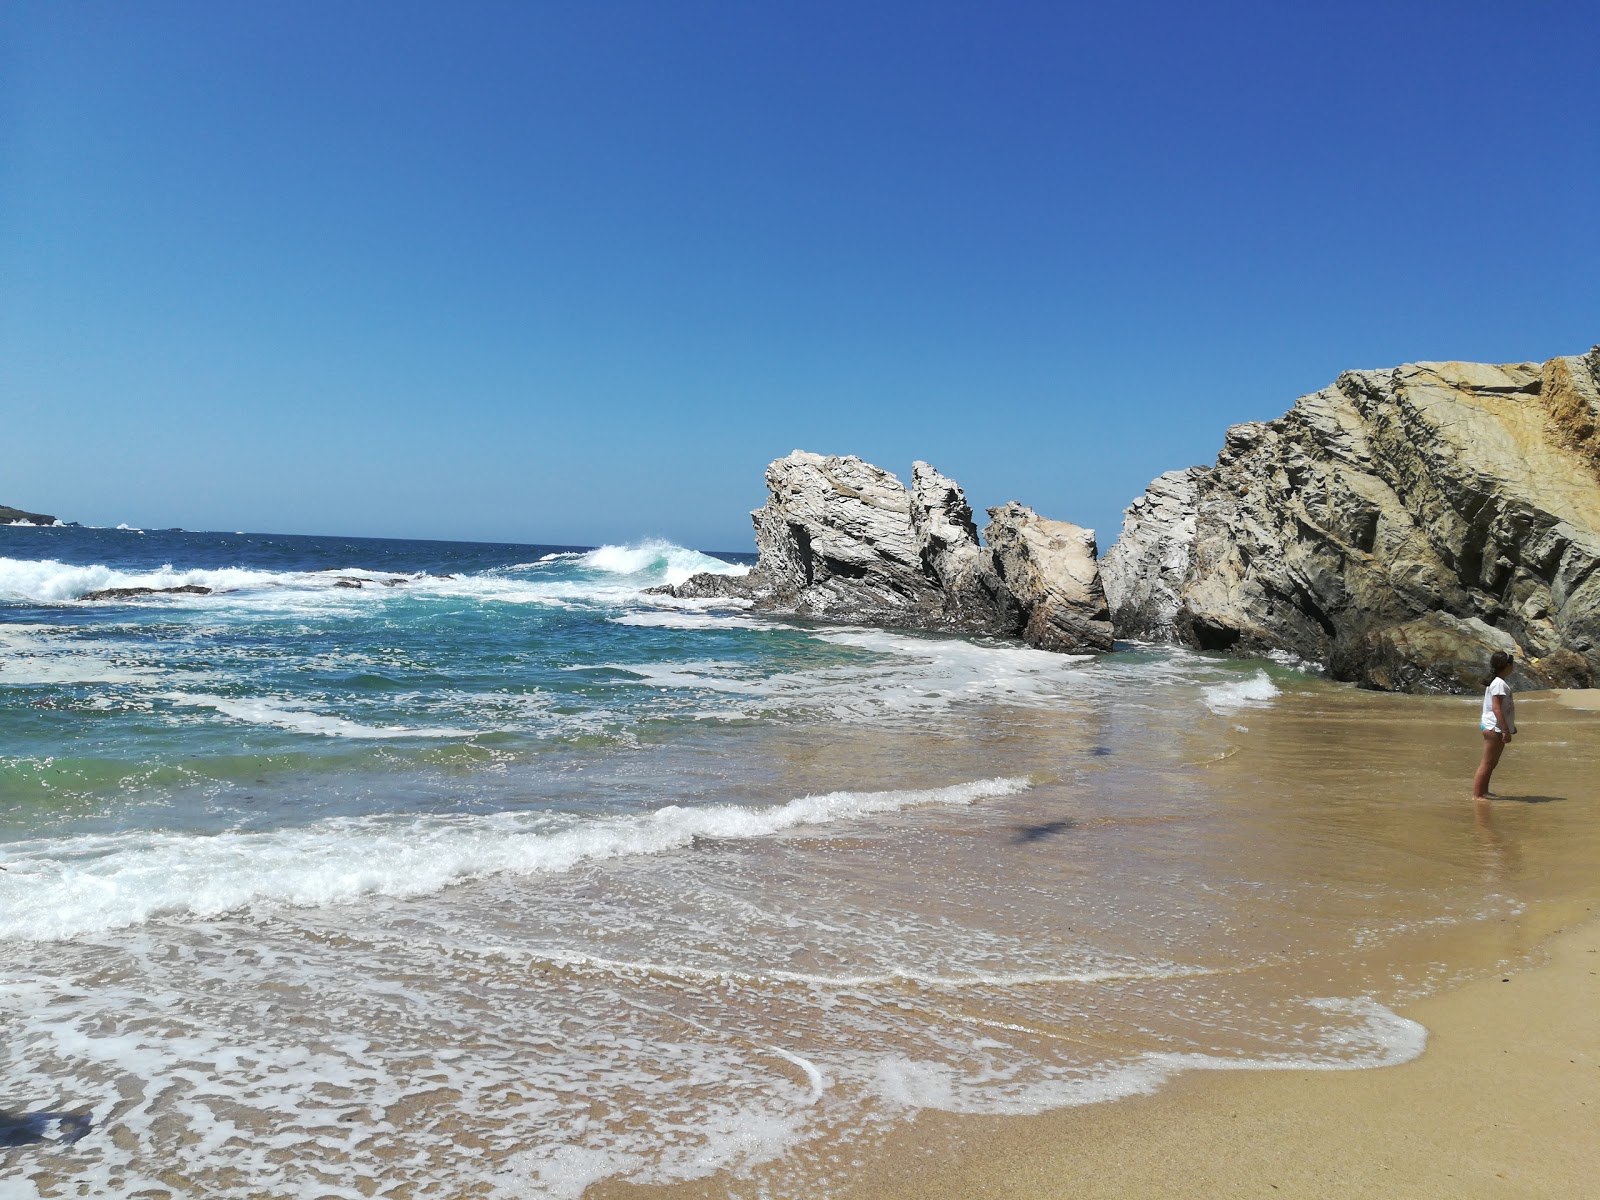 Valokuva Praia dos Buizinhosista. pinnalla turkoosi puhdas vesi:n kanssa